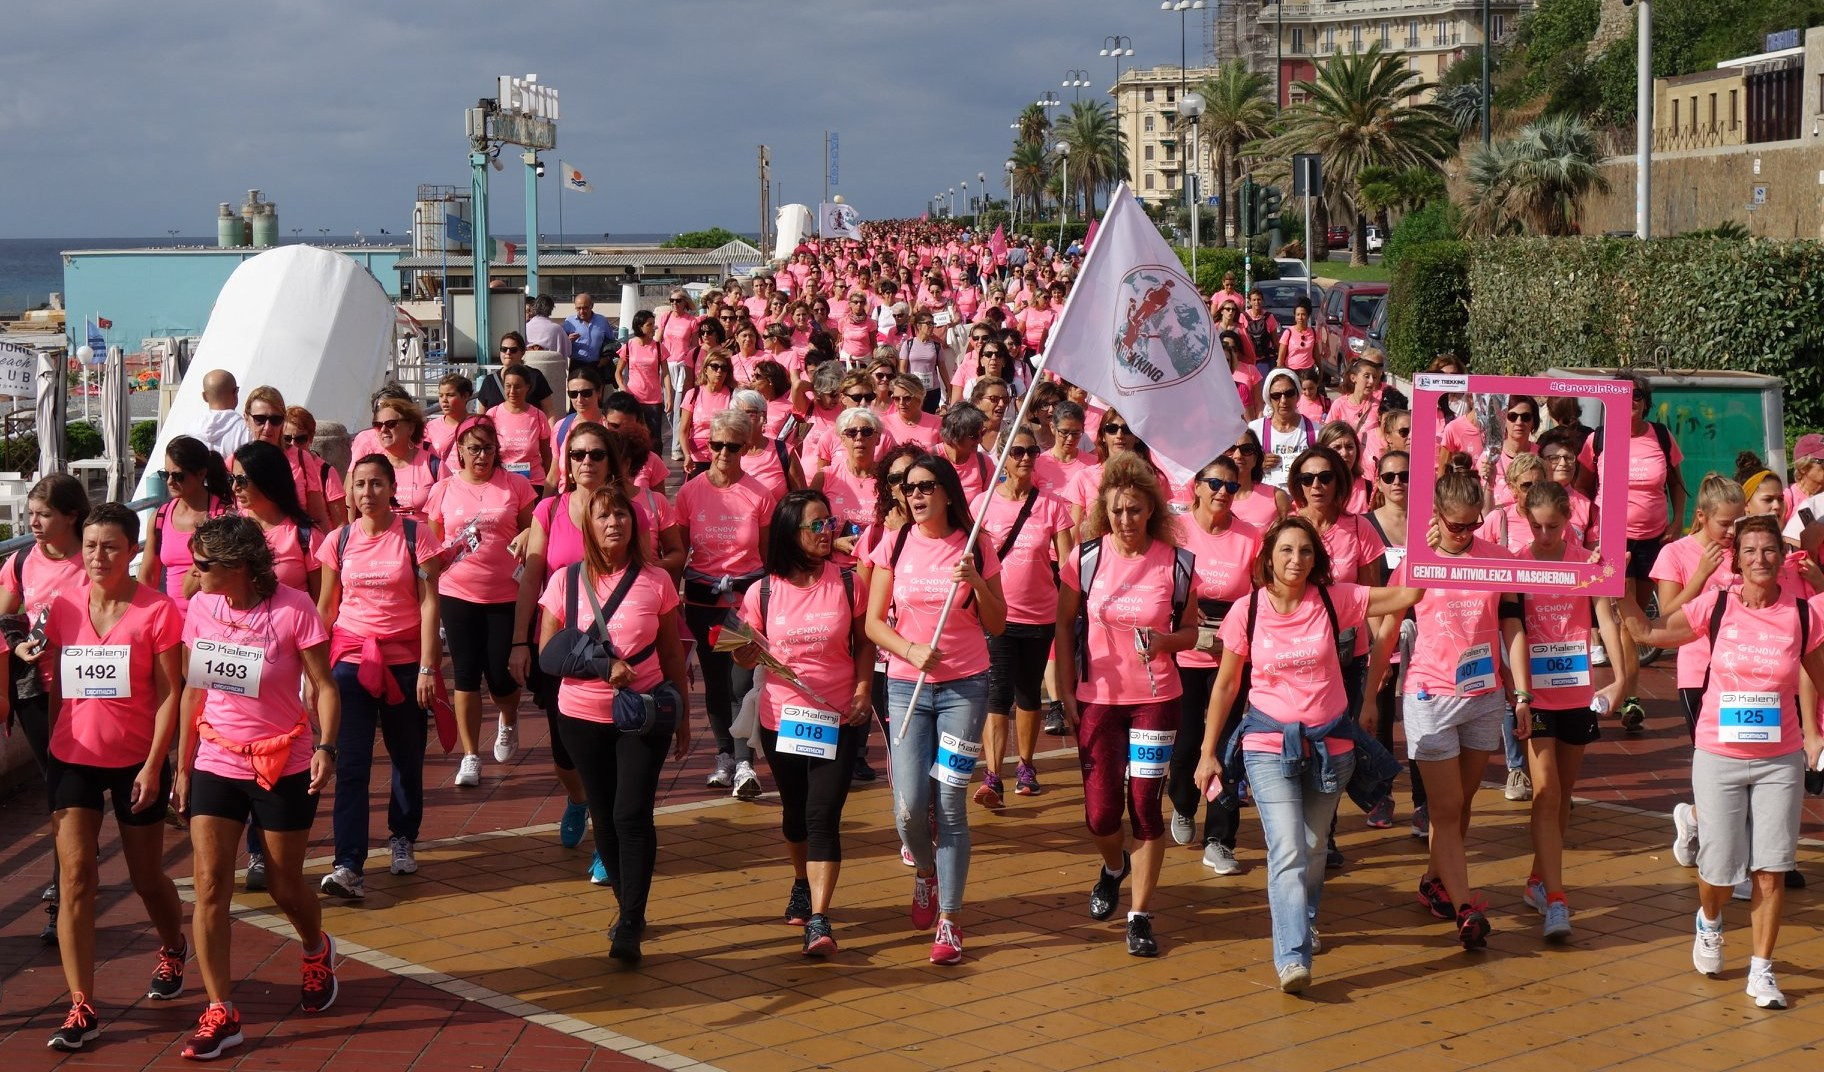 Domenica torna la camminata benefica  Genova in rosa 